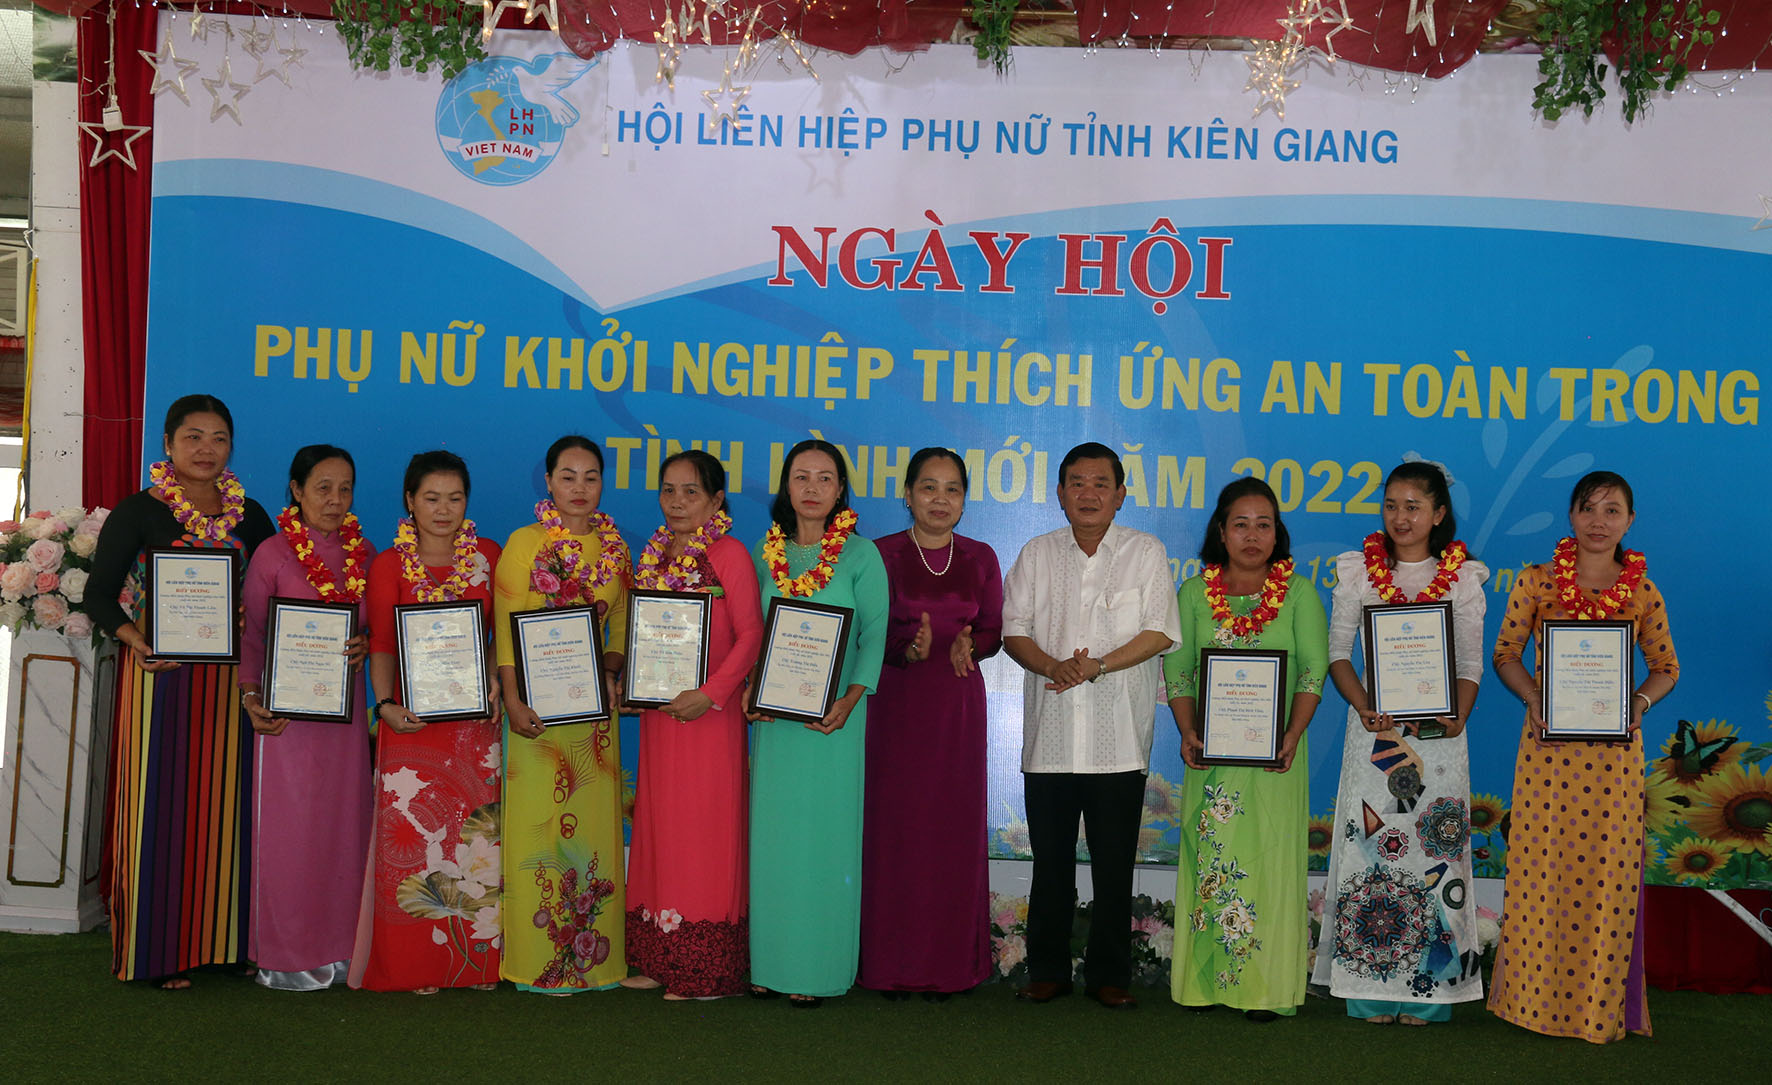 Khen thưởng các chị em khởi nghiệp ở Kiên Giang 